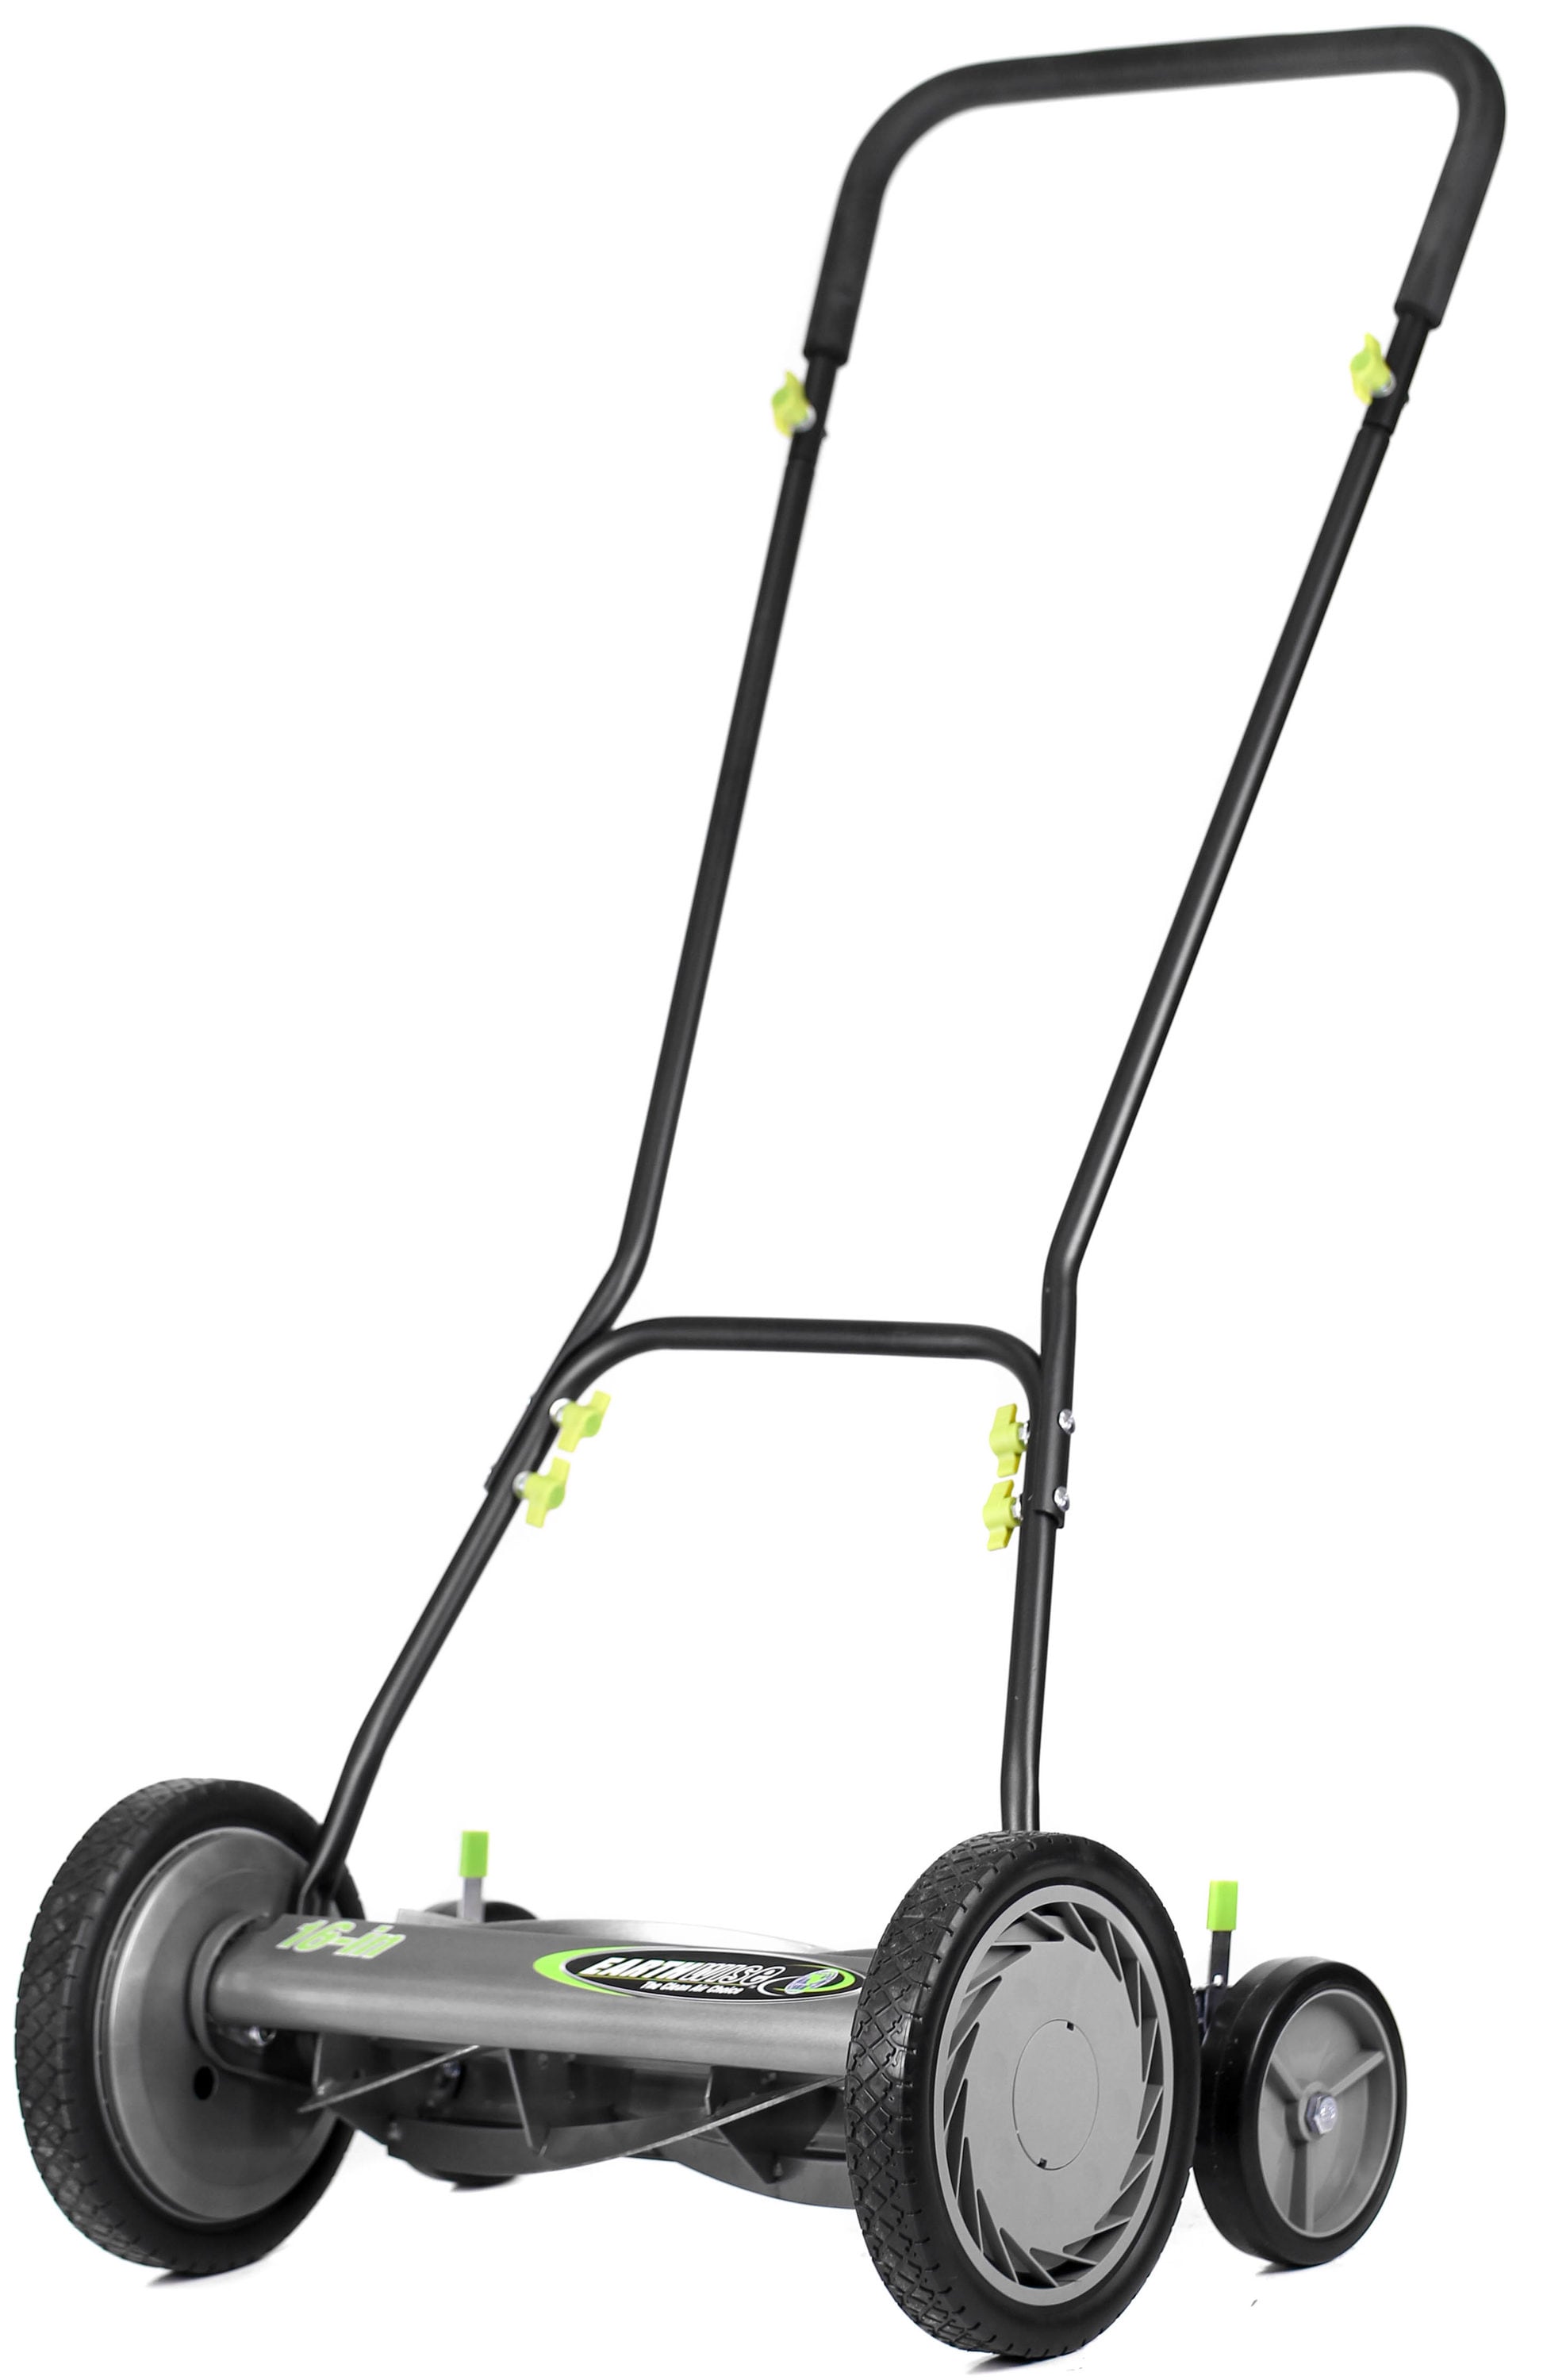  Reel Lawn Mower